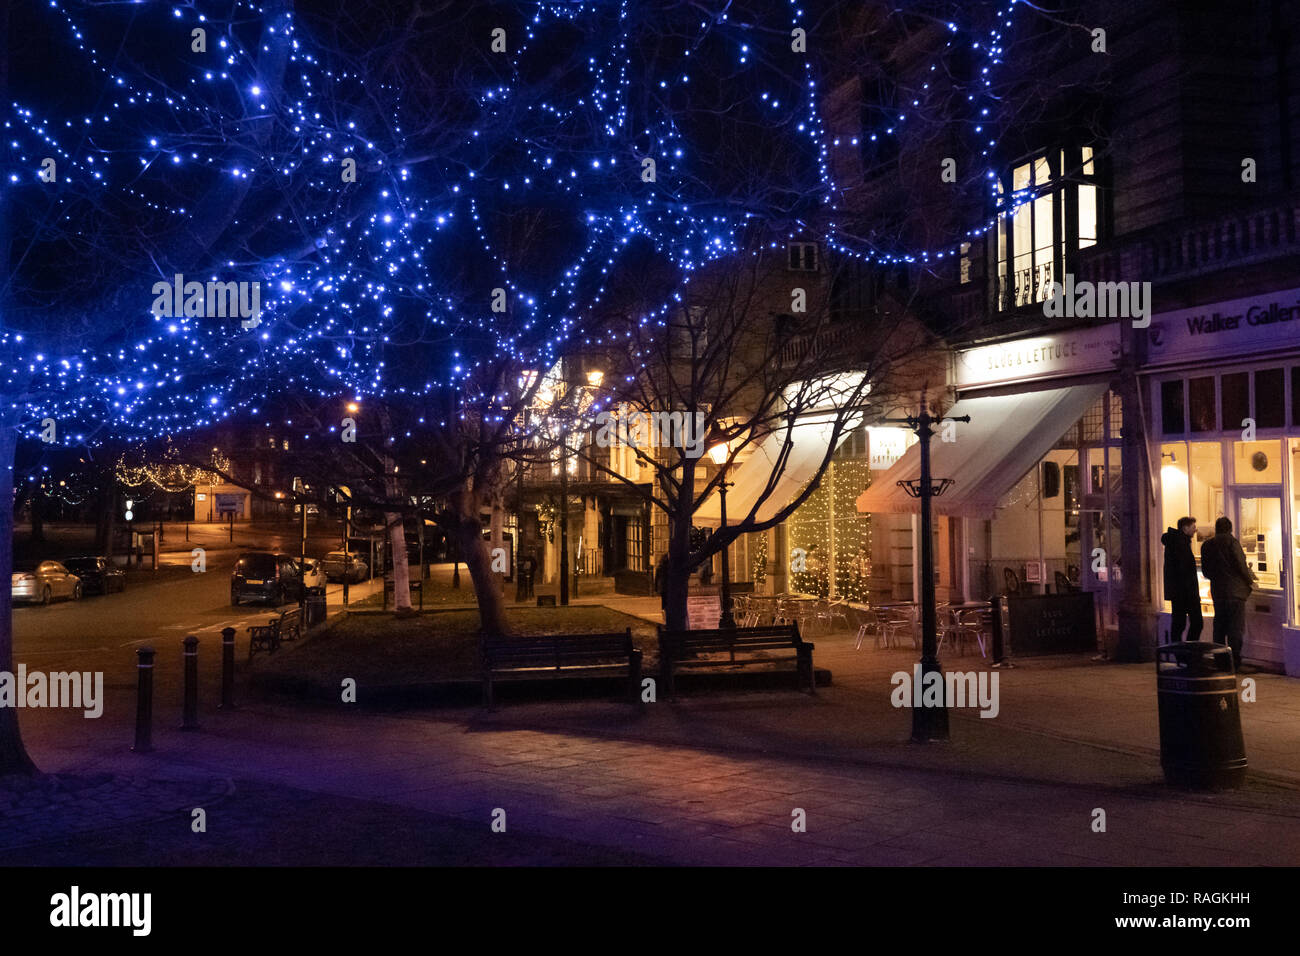 Lumières décoratives bleues décorant un arbre dans un quartier commerçant urbain à Harrogate, dans le North Yorkshire, en Angleterre, au Royaume-Uni. Banque D'Images